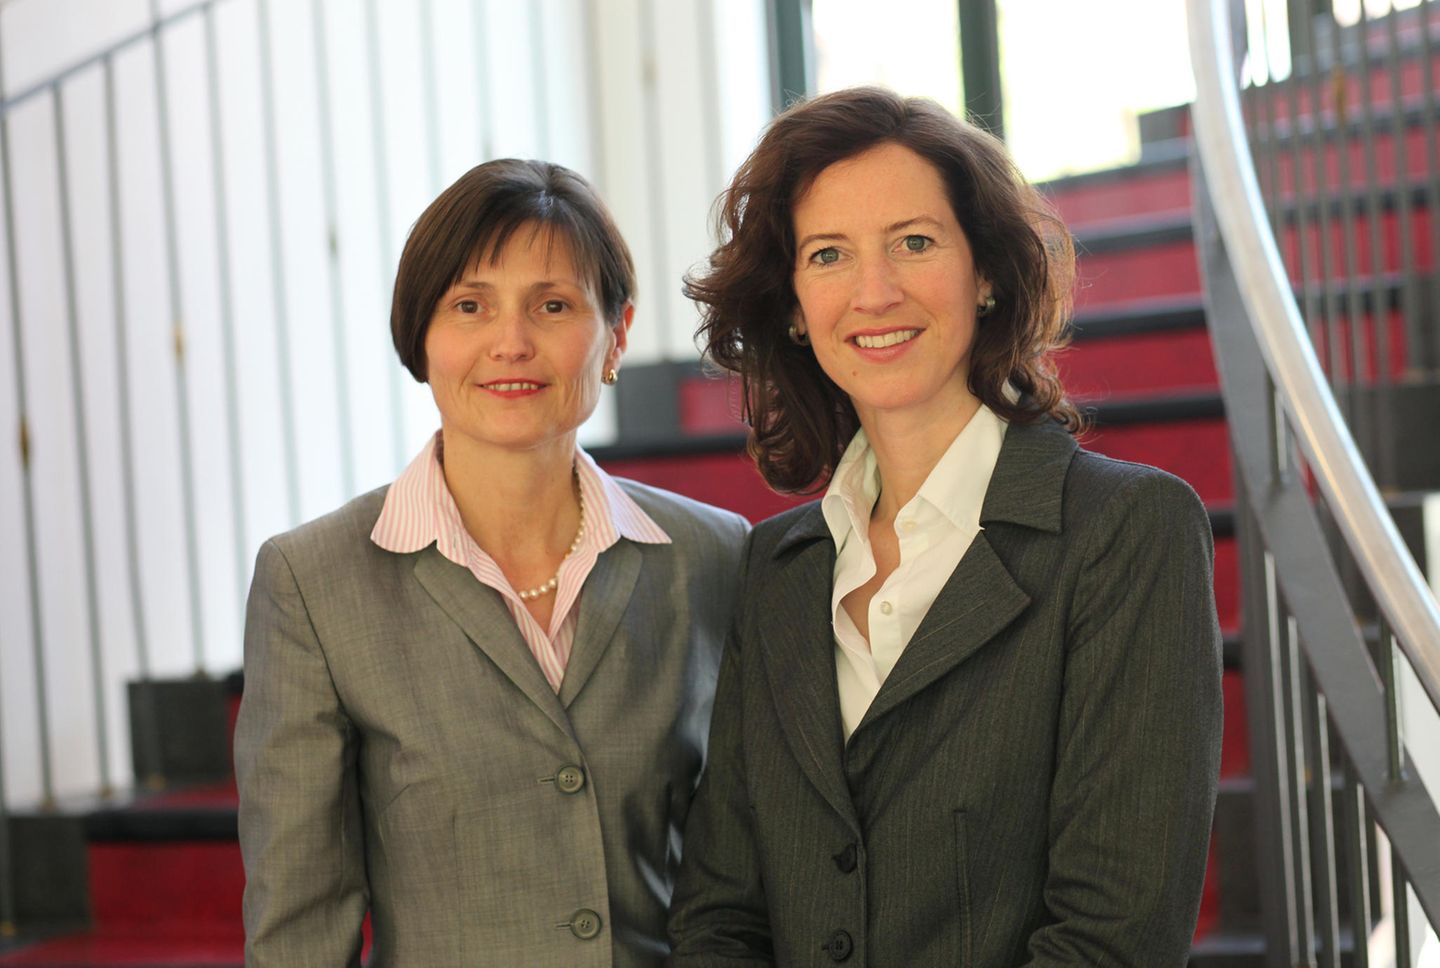 Die Vermögensberatung Schäfer Regensburger aus Münster gehört 2021 zu den Top-Vermögensverwaltern. Im Bild die beiden Gründerinnen Inge Schäfer-Schmidbauer und Isolde Regensburger